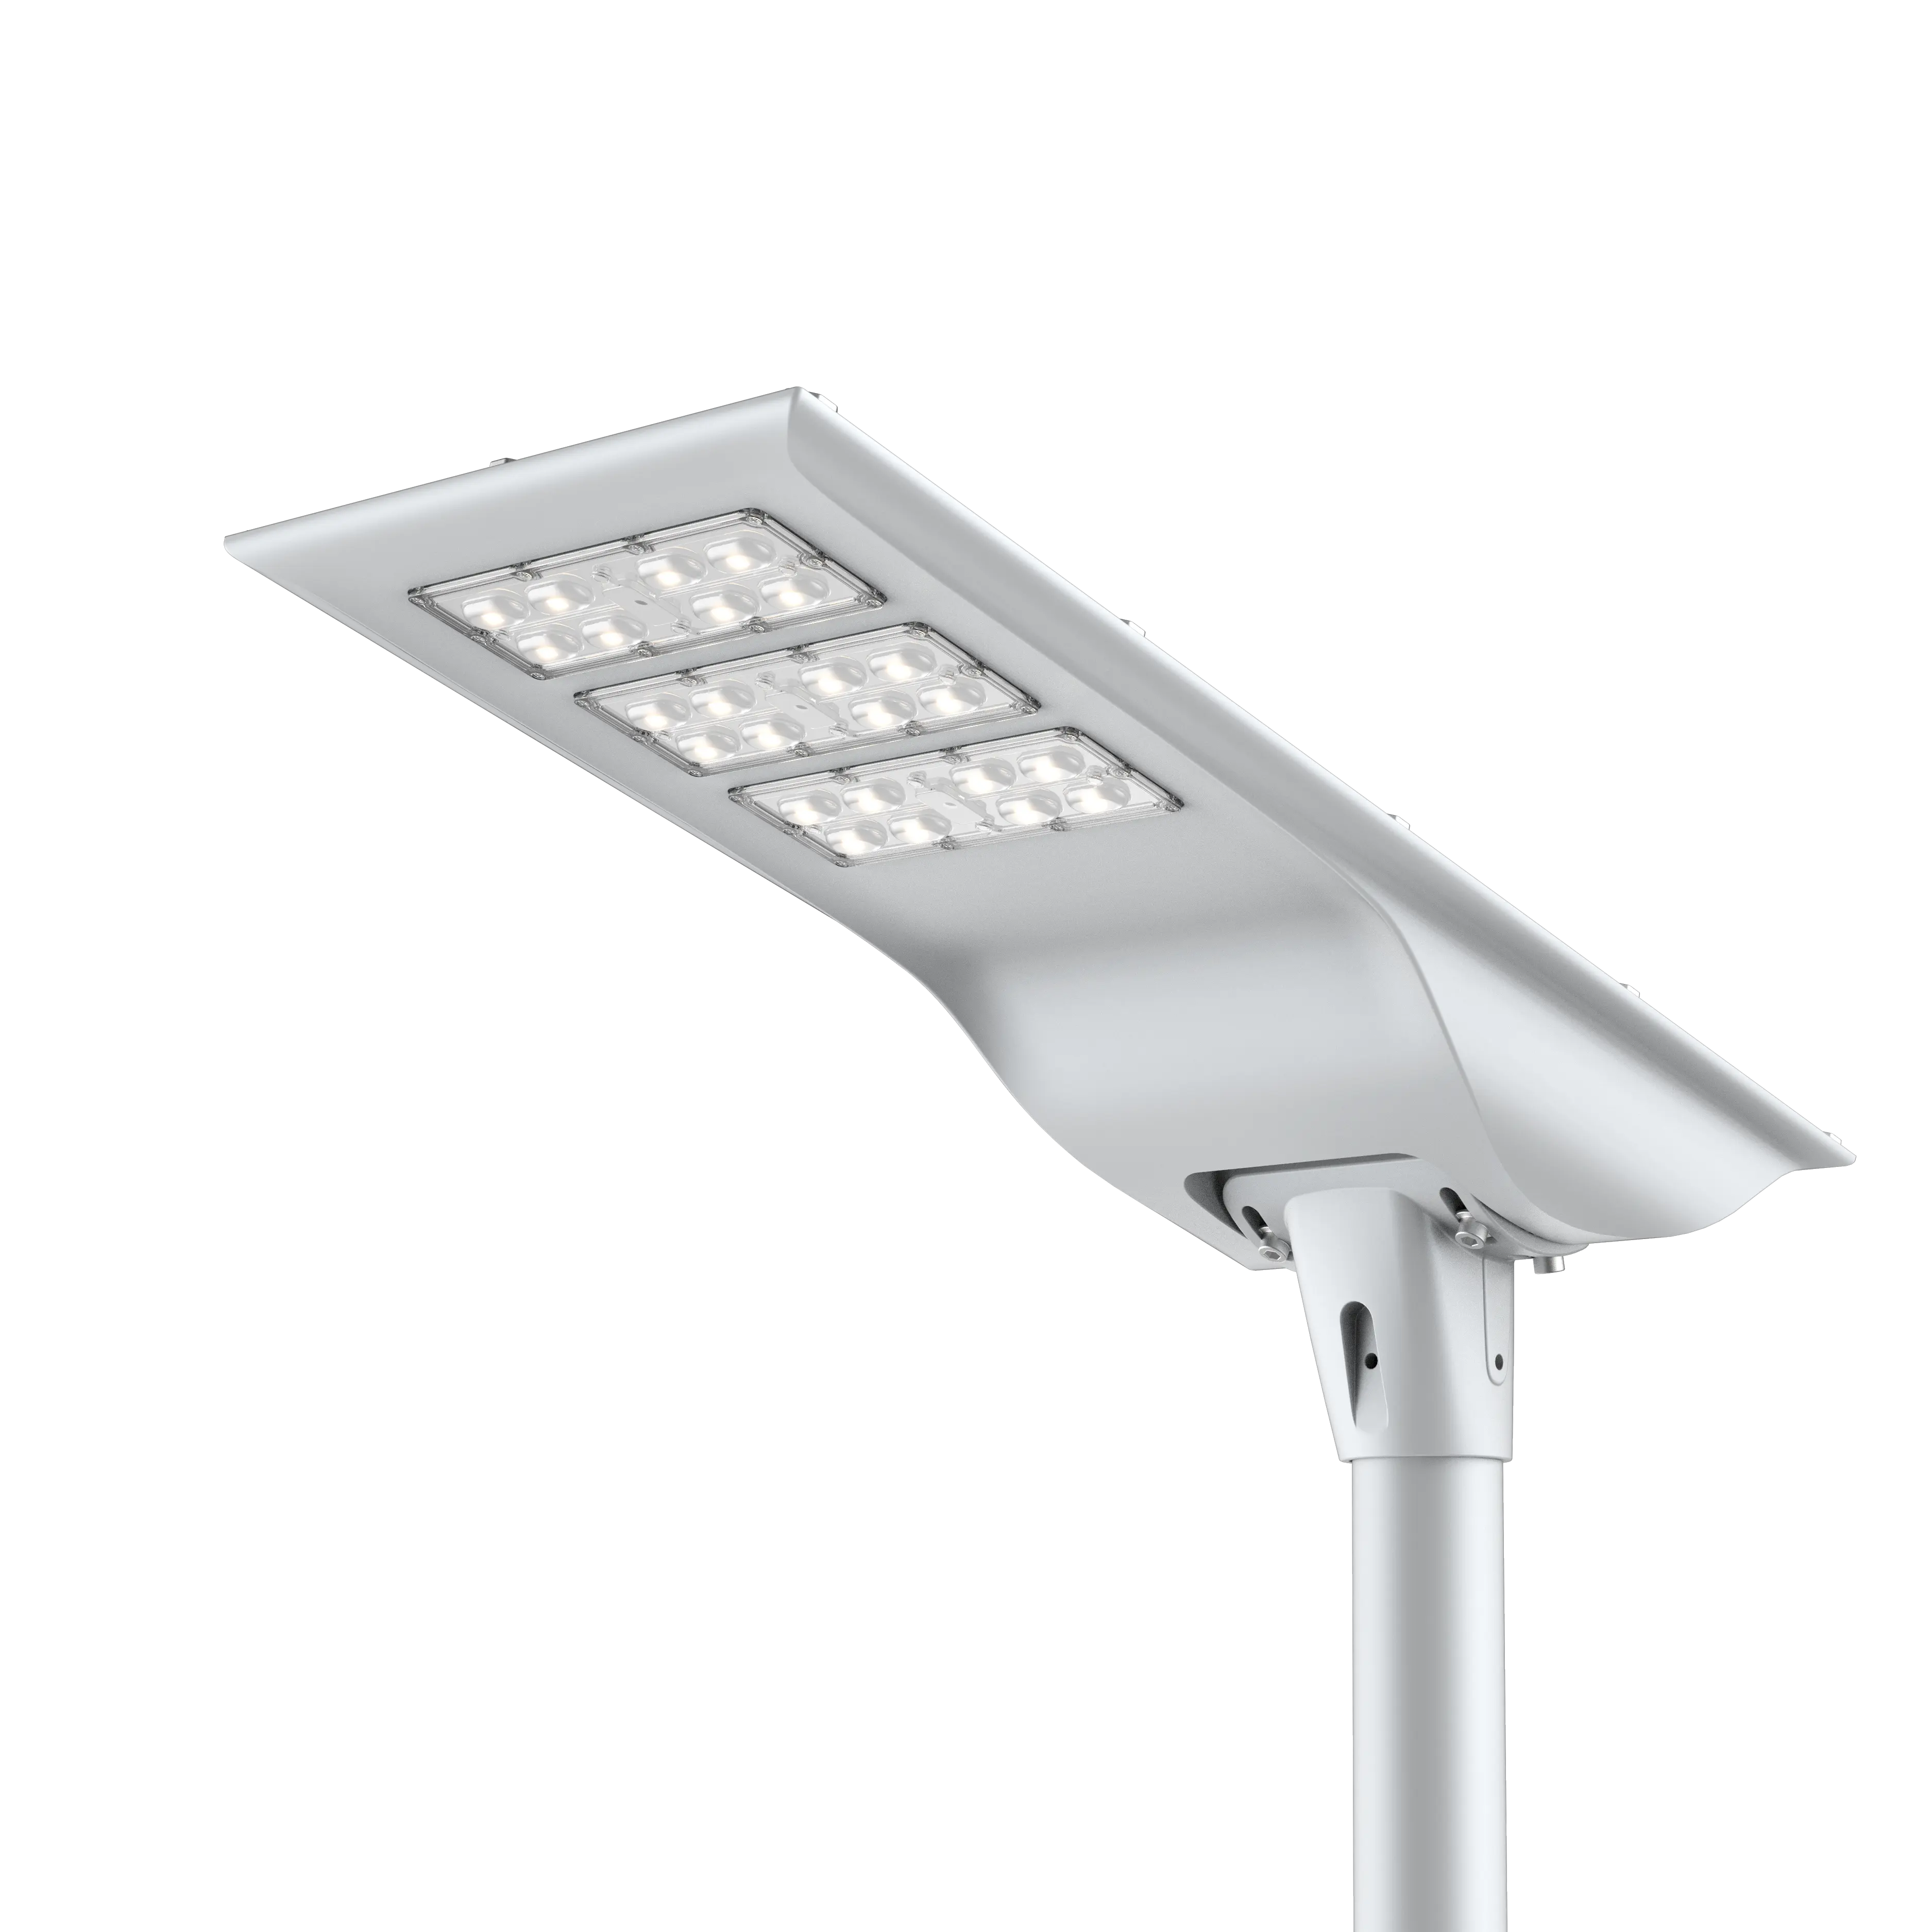 알루미늄 조명 램프 올인원 태양열 Led 램파라 쉘 60W LED 185lm/w 램파라 조명 led 태양 광 가로등 주택